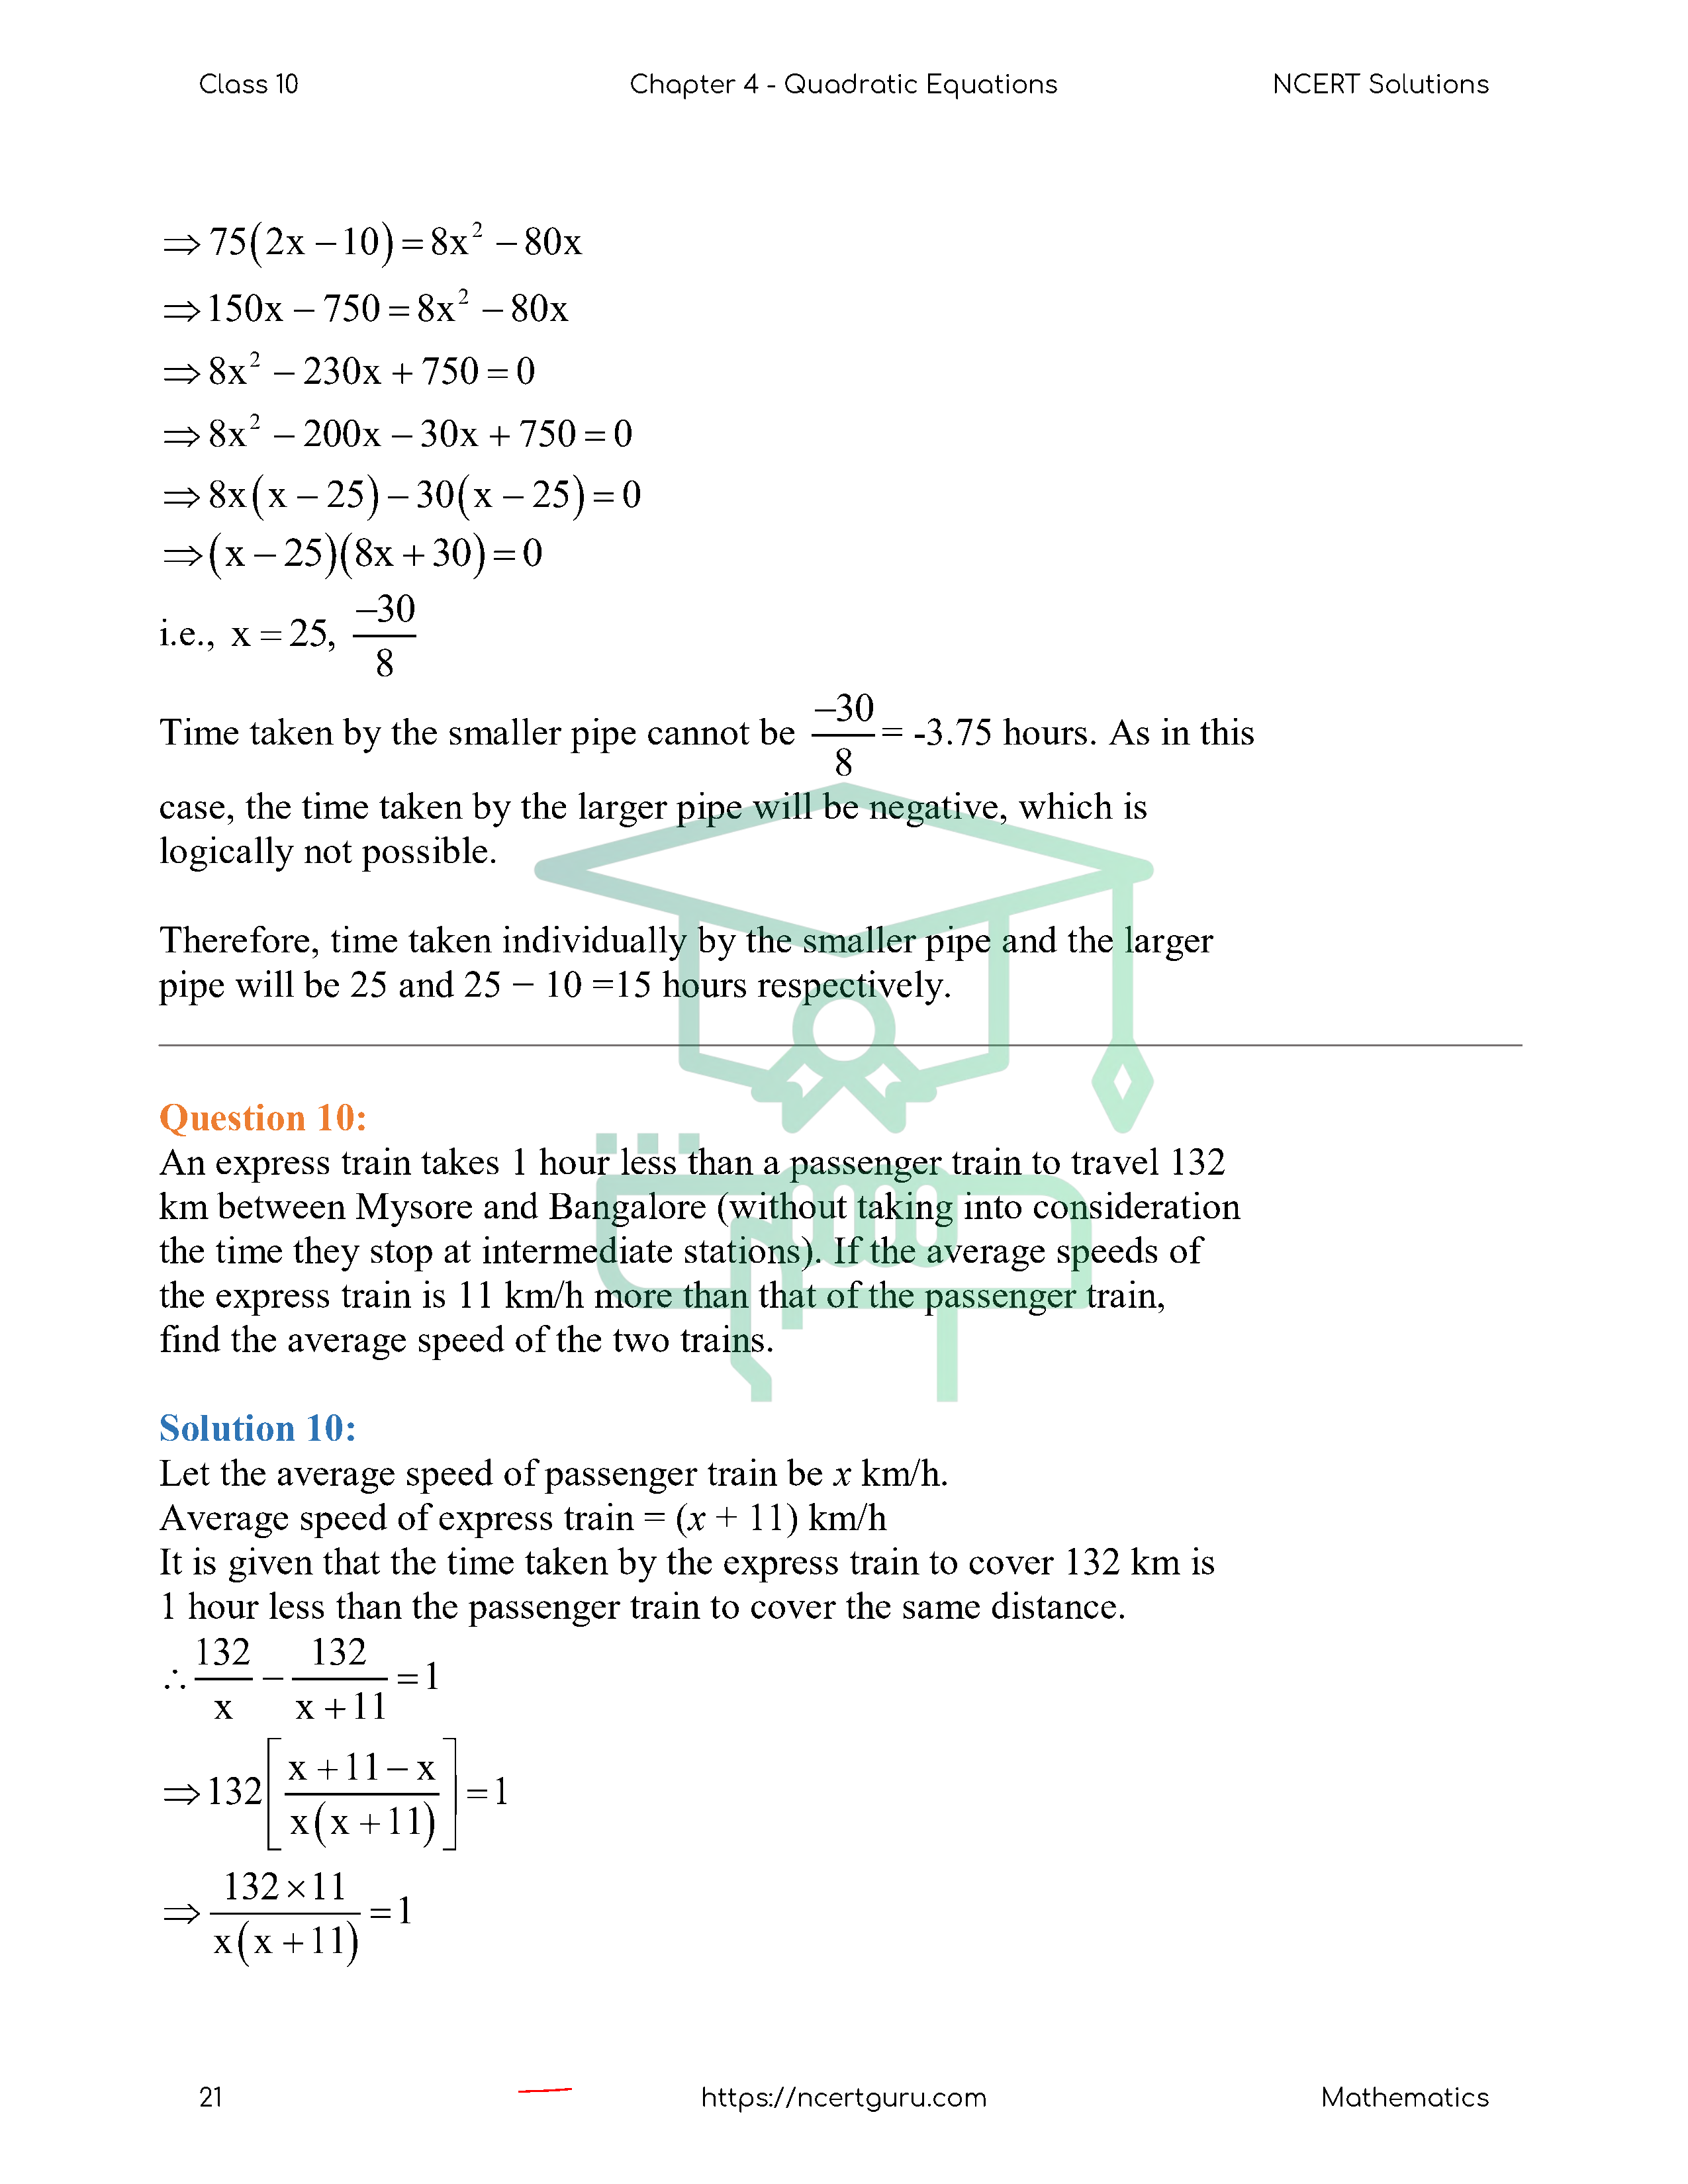 NCERT Solutions for Class 10 Maths Chapter 4